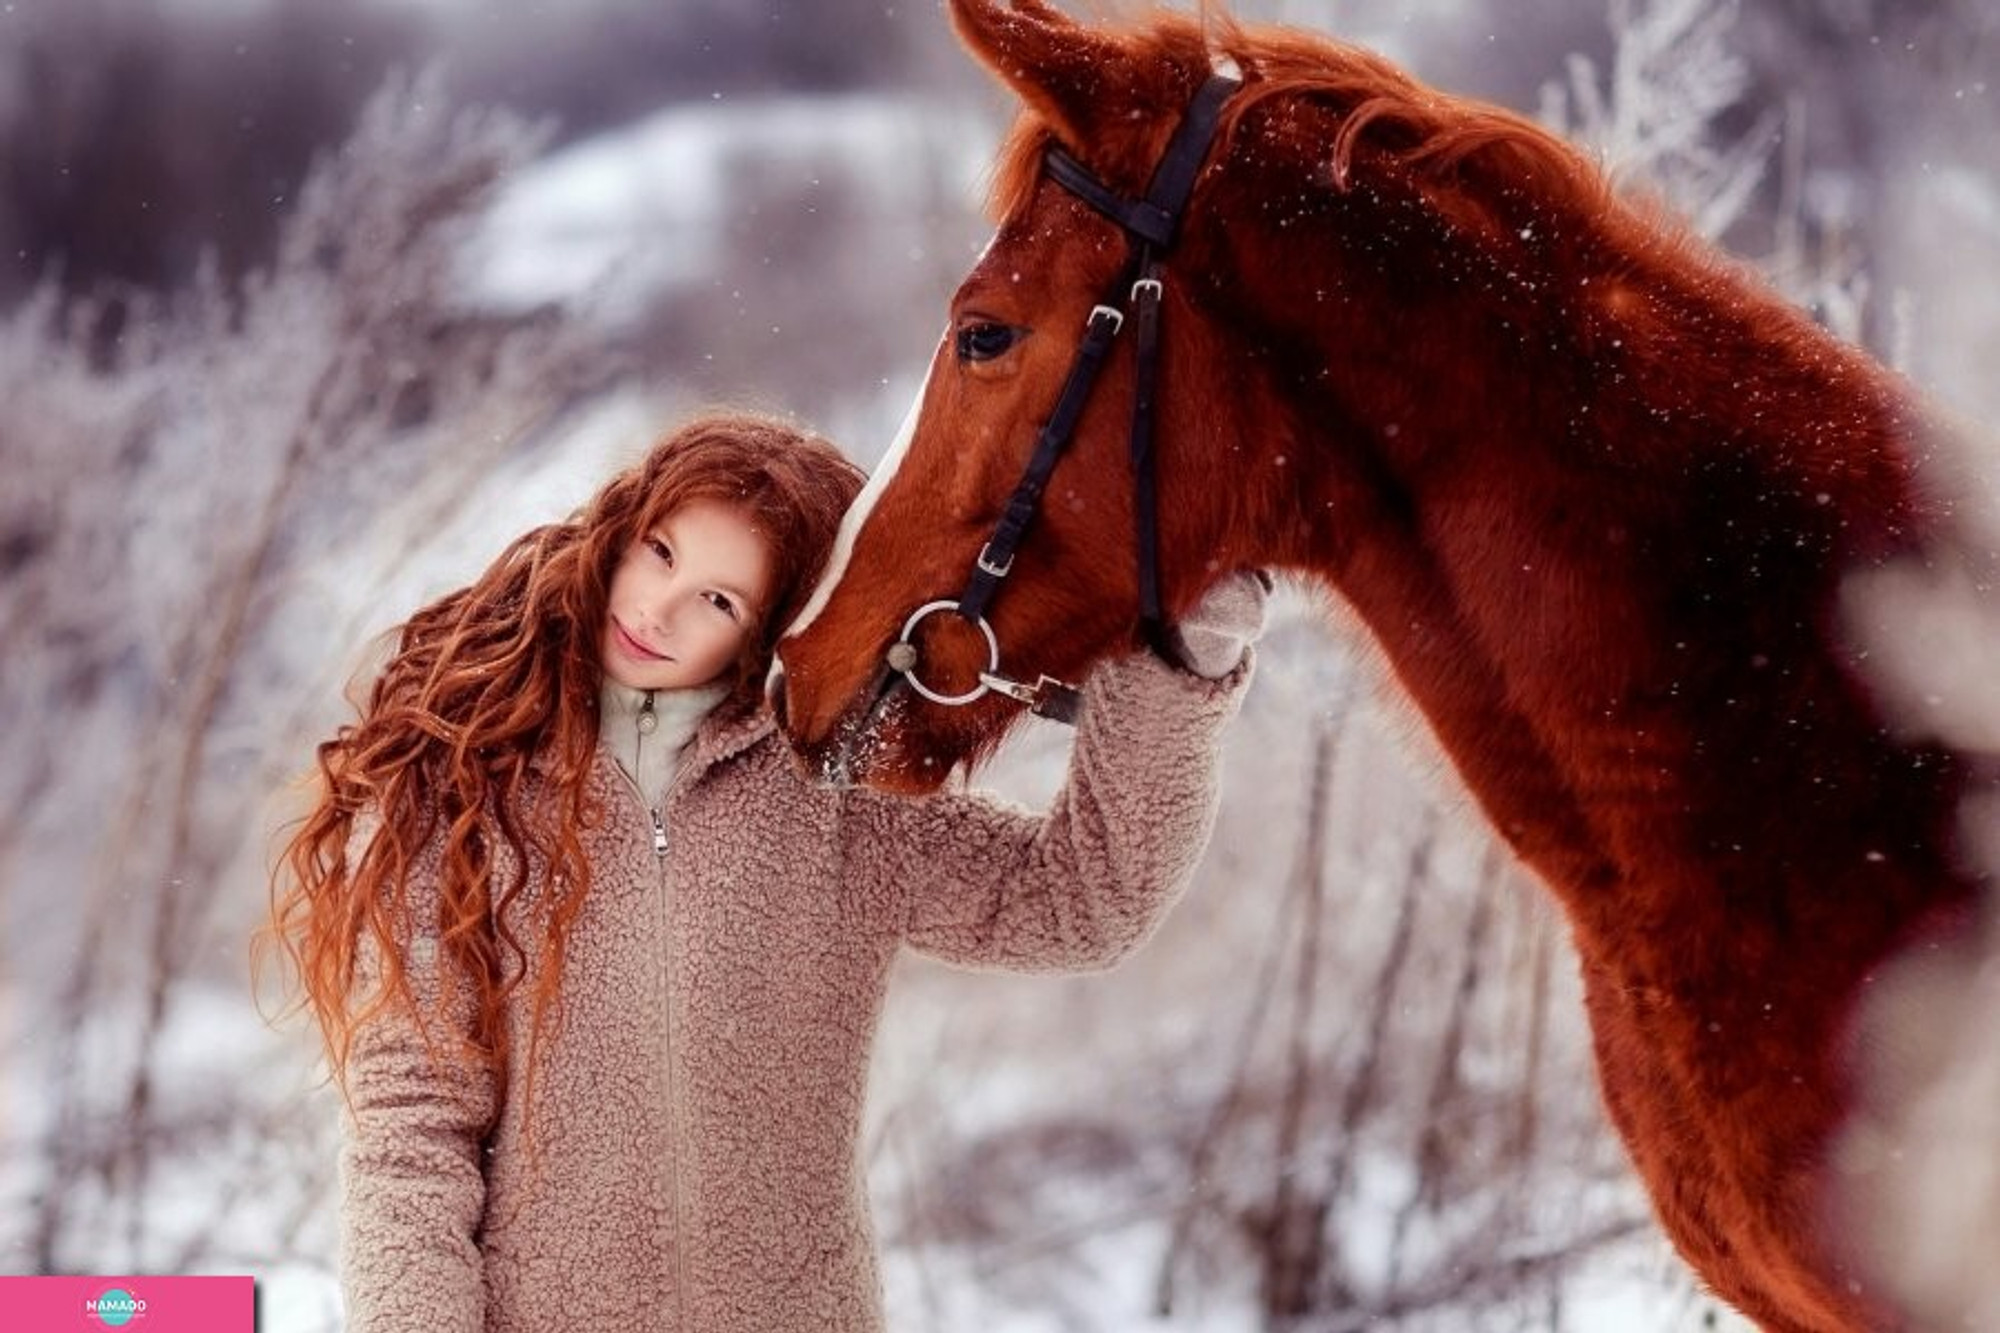 "Царские владения", конный клуб в поселке Журавли, Самарская область 